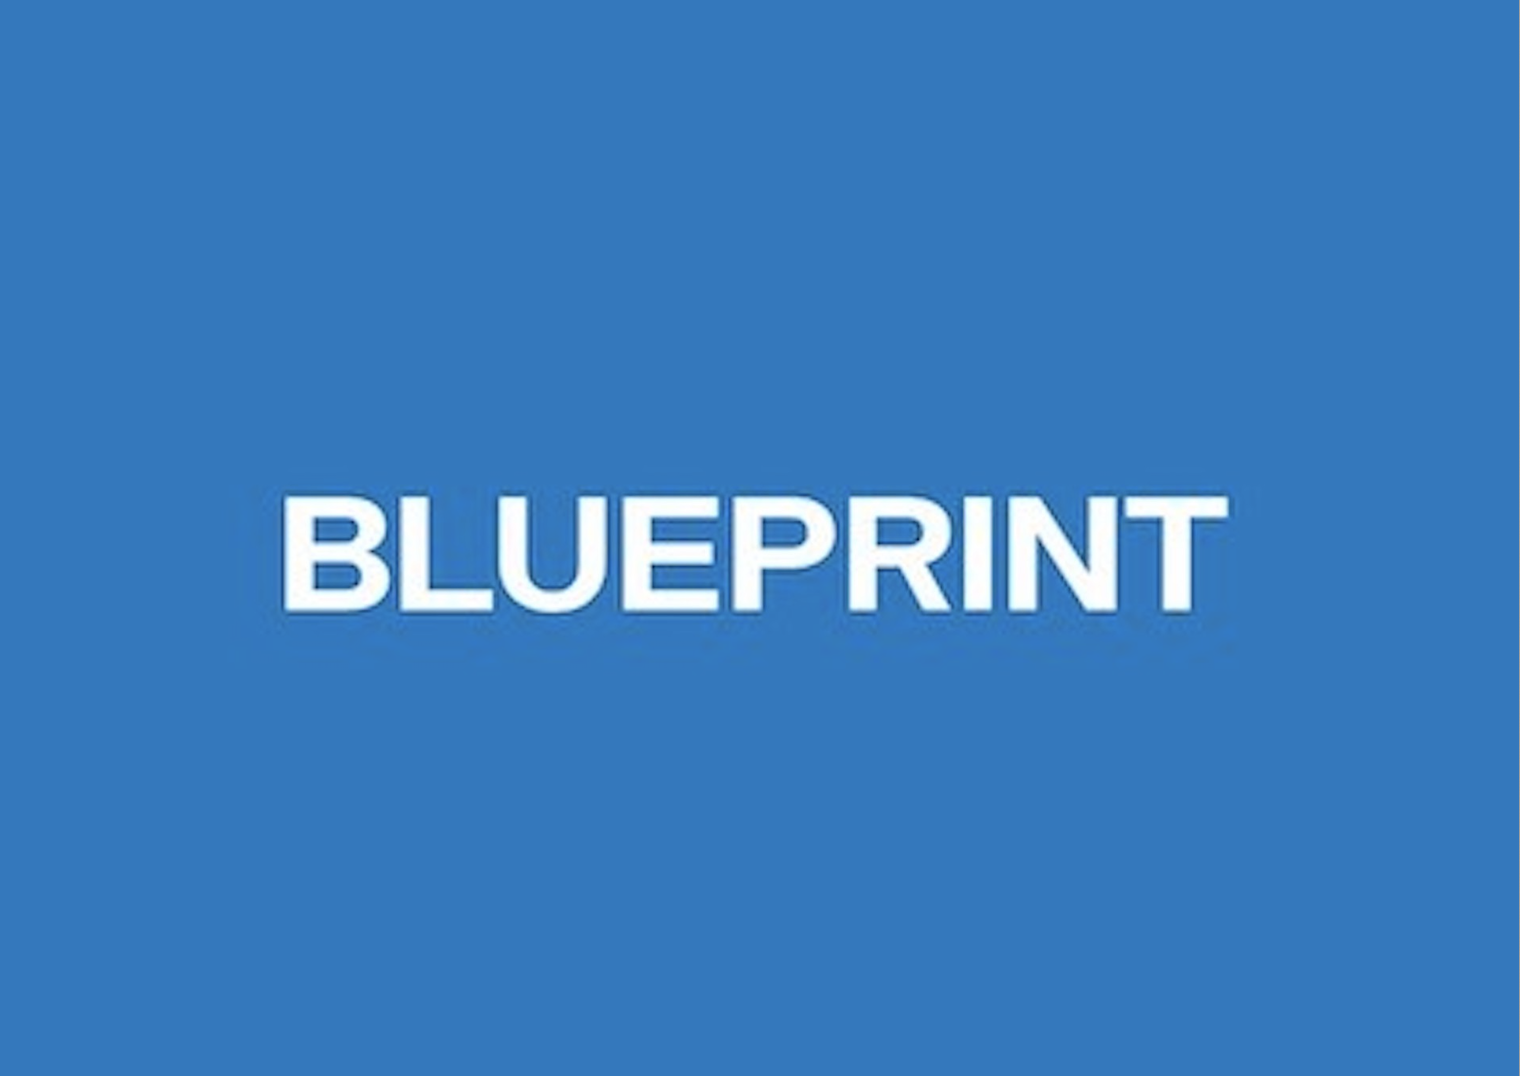 バックエンドエンジニア | 株式会社BLUEPRINT Founders